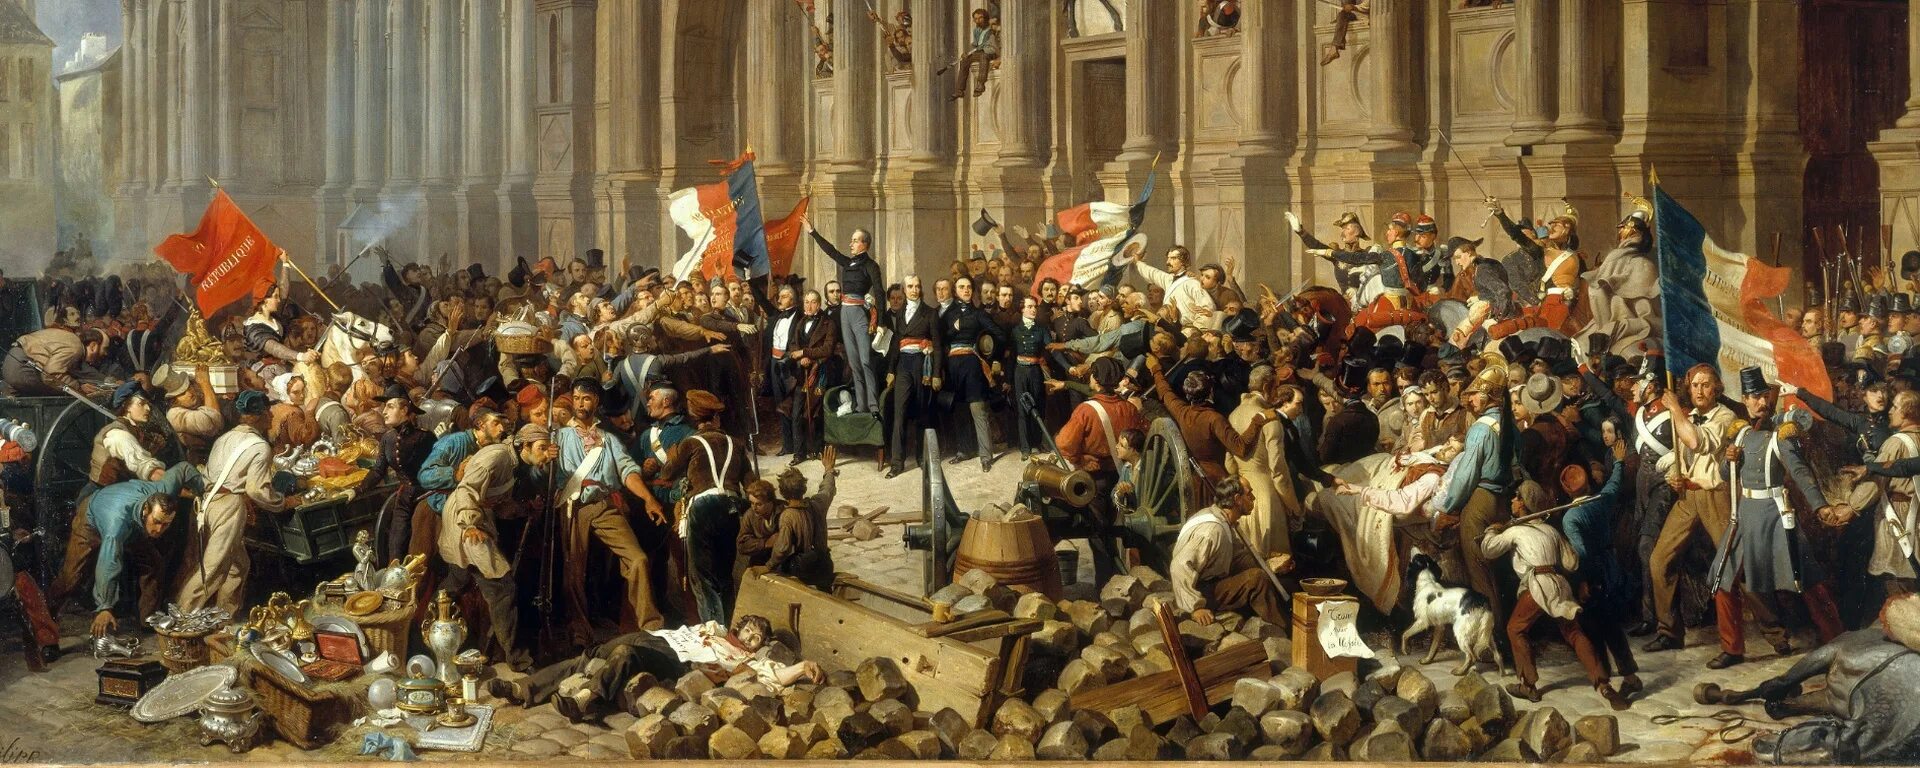 Революции в европе в 19 в. Революция в Германии 1848. Германский национализм 19 век. Революция 1848 года во Франции. Буржуазная революция в Германии.